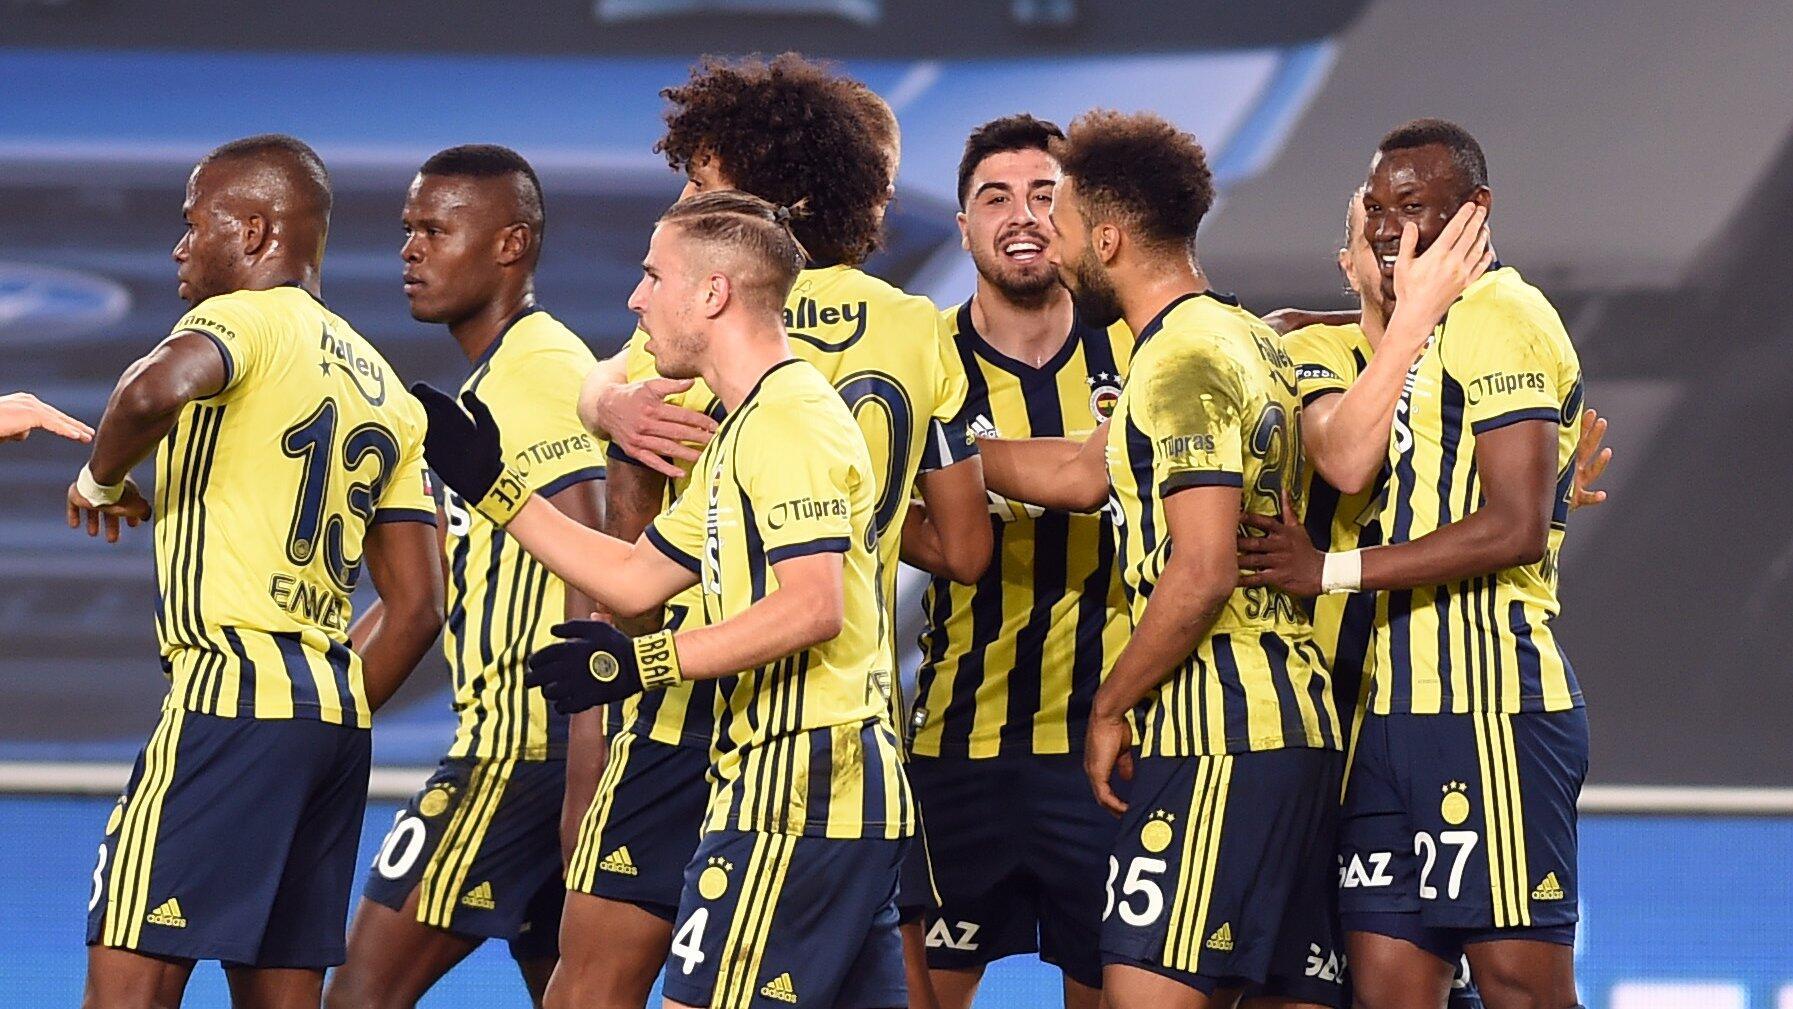 Ο Fenerbahçe ολοκλήρωσε το πρώτο ημίχρονο με ρεκόρ περασμάτων και 42 πόντους!